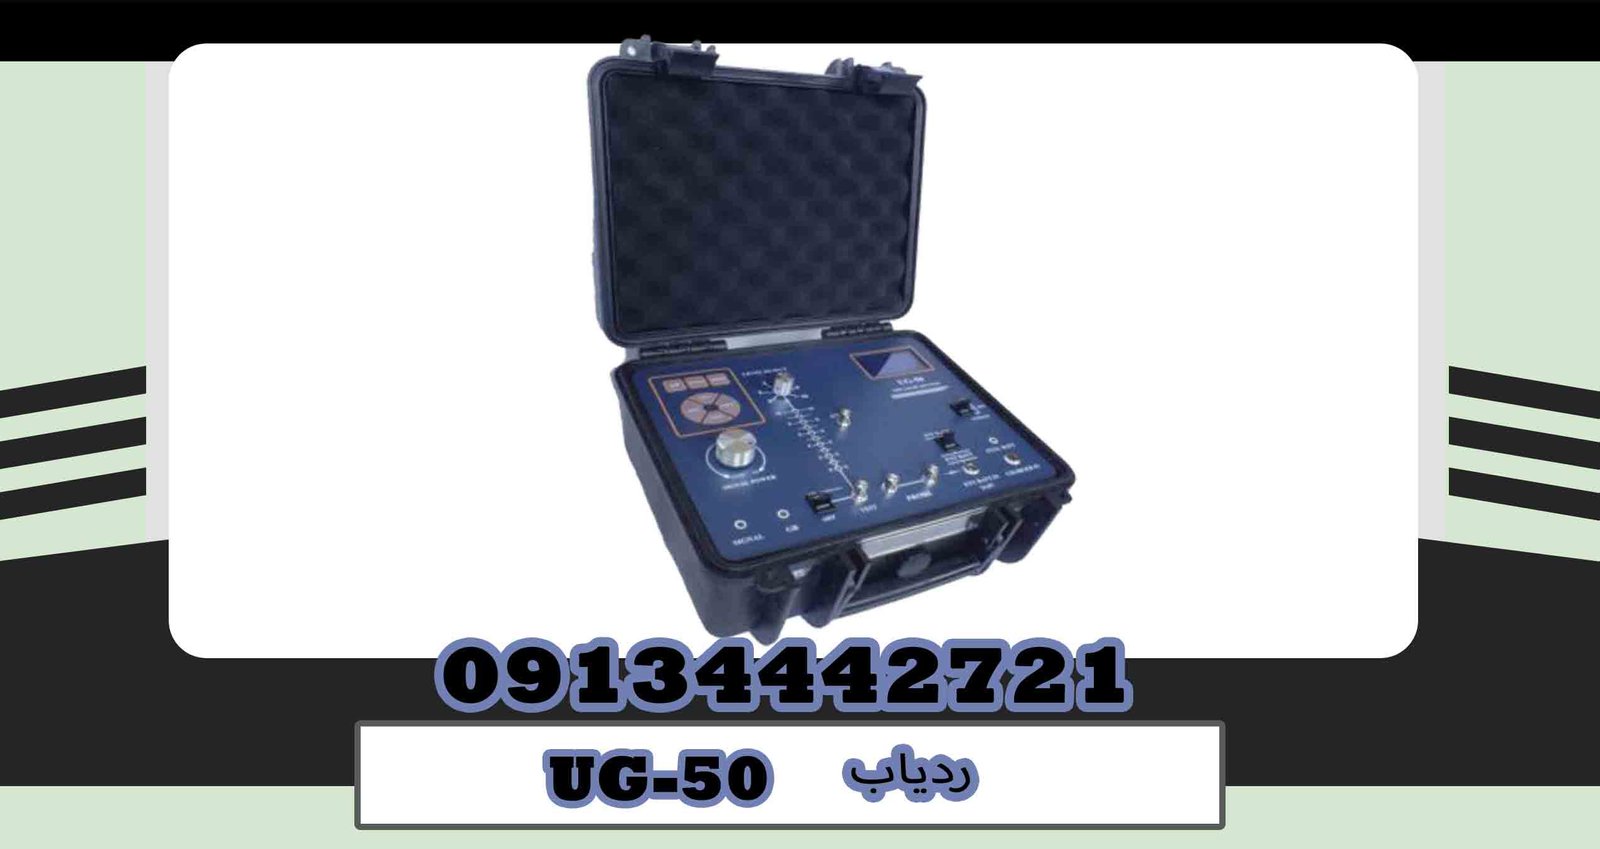 UG-50 tracker